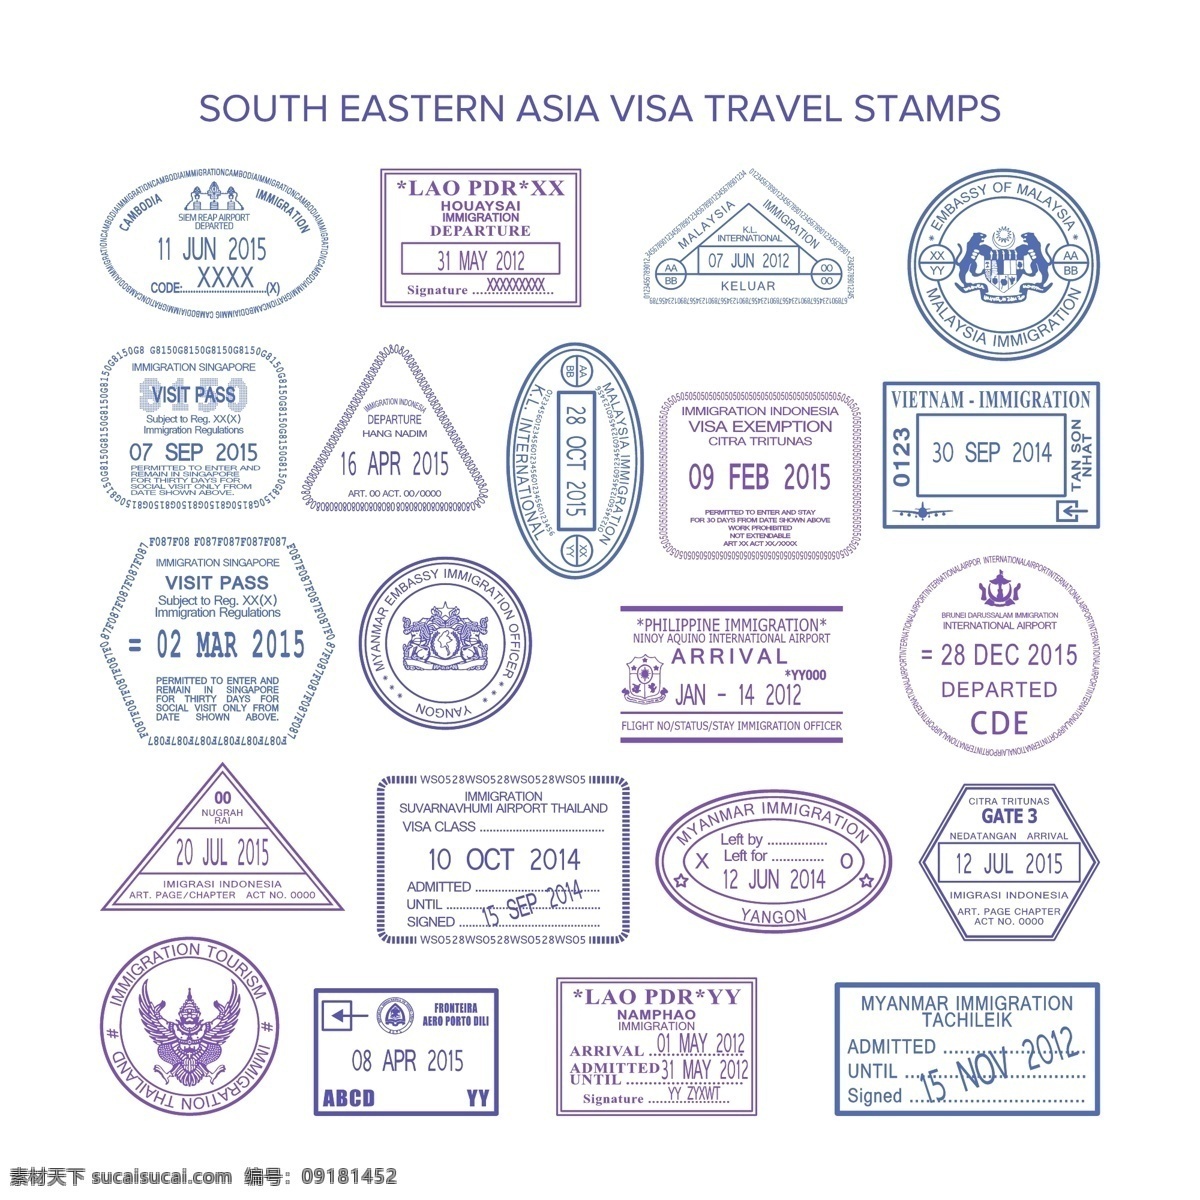 旅游印章 旅游 印章 标签 贴纸 矢量素材 邮戳 邮票 广告设计素材